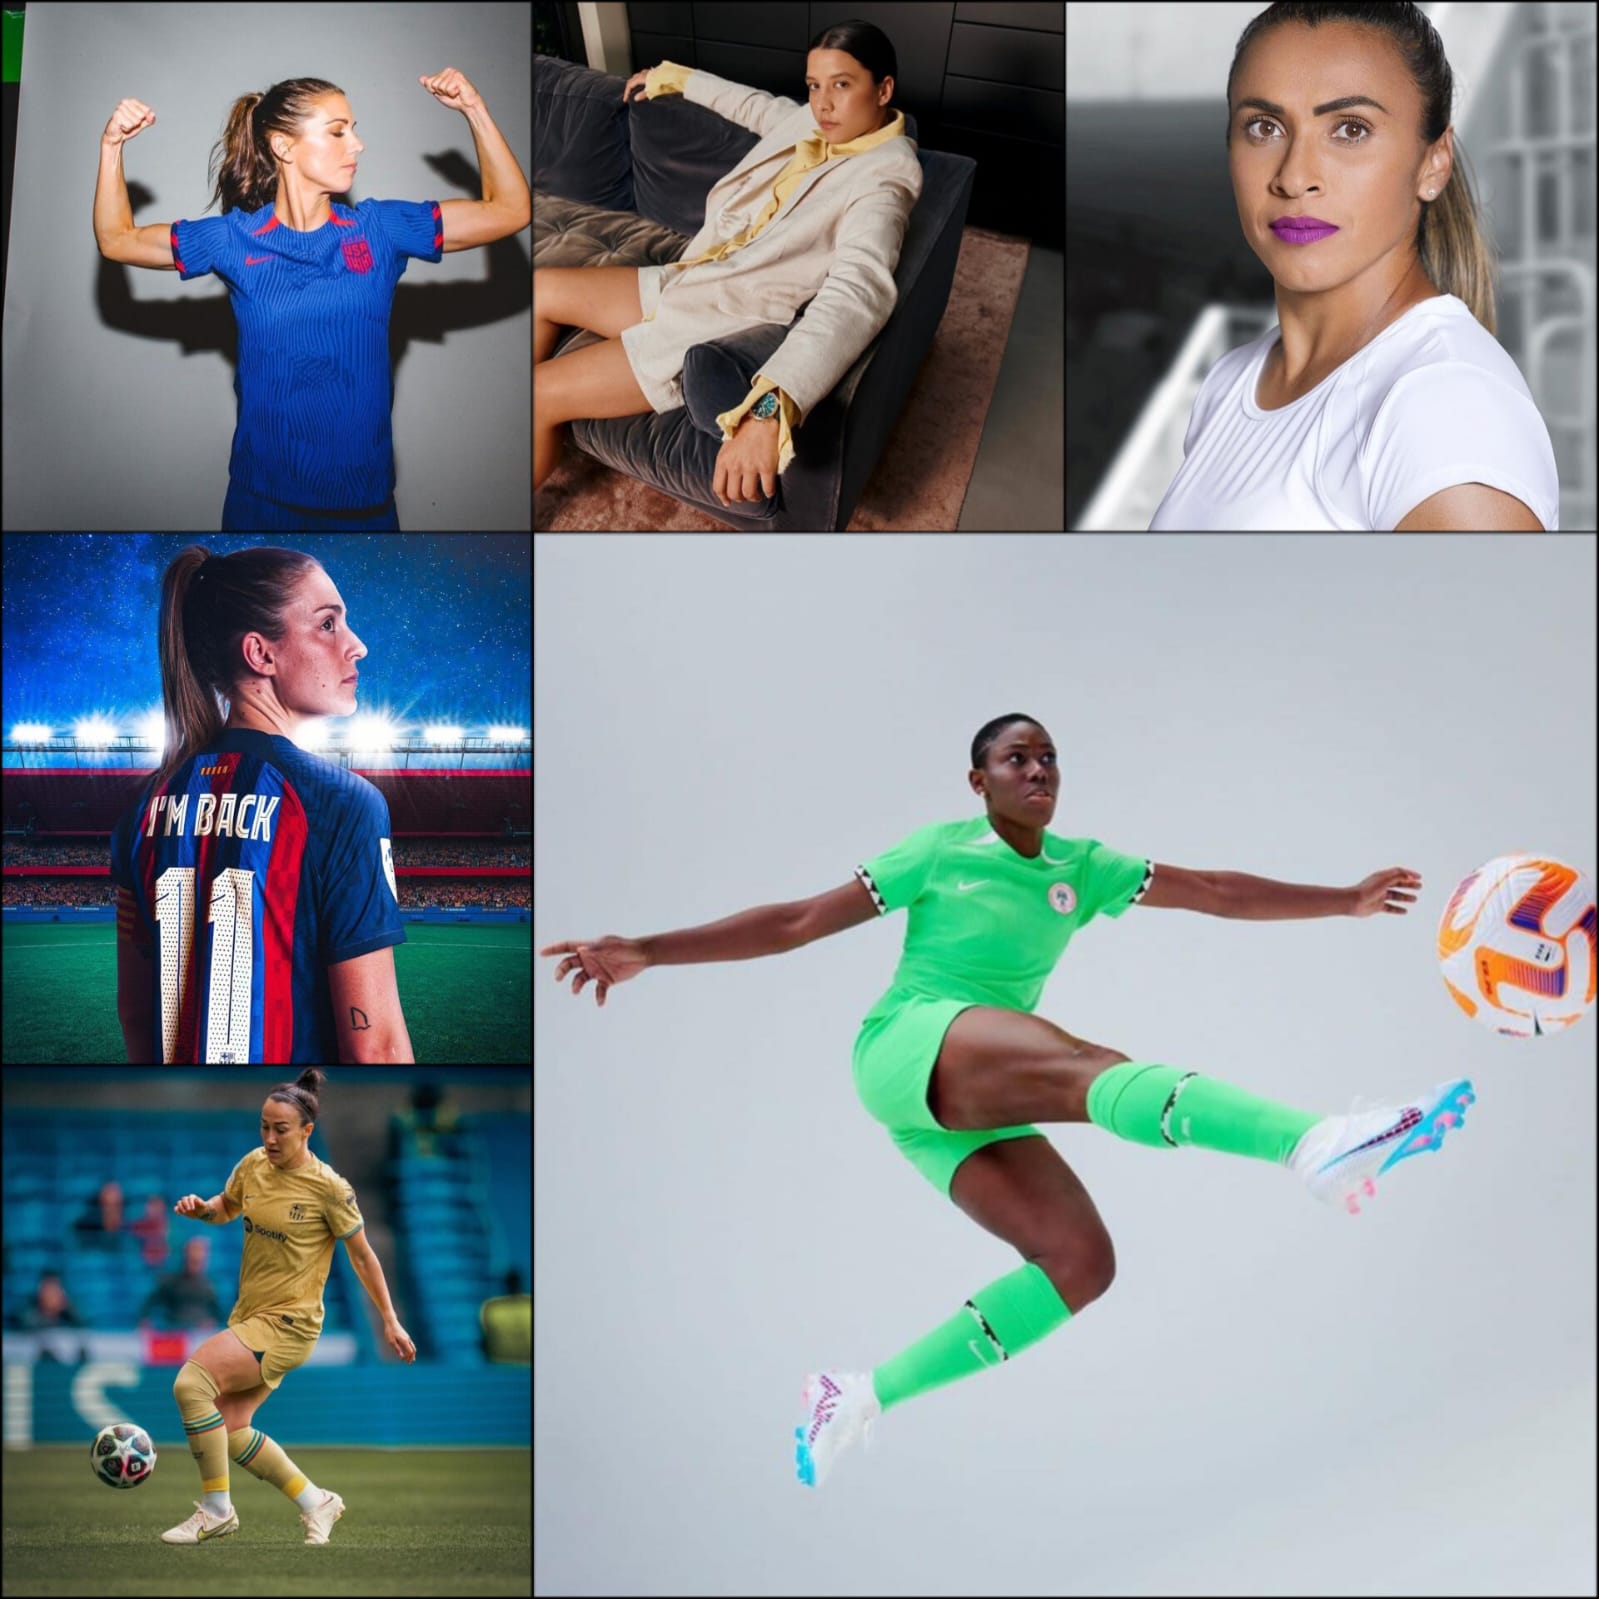 Jogo comemorativo reunirá grandes nomes do futebol feminino de Lorena